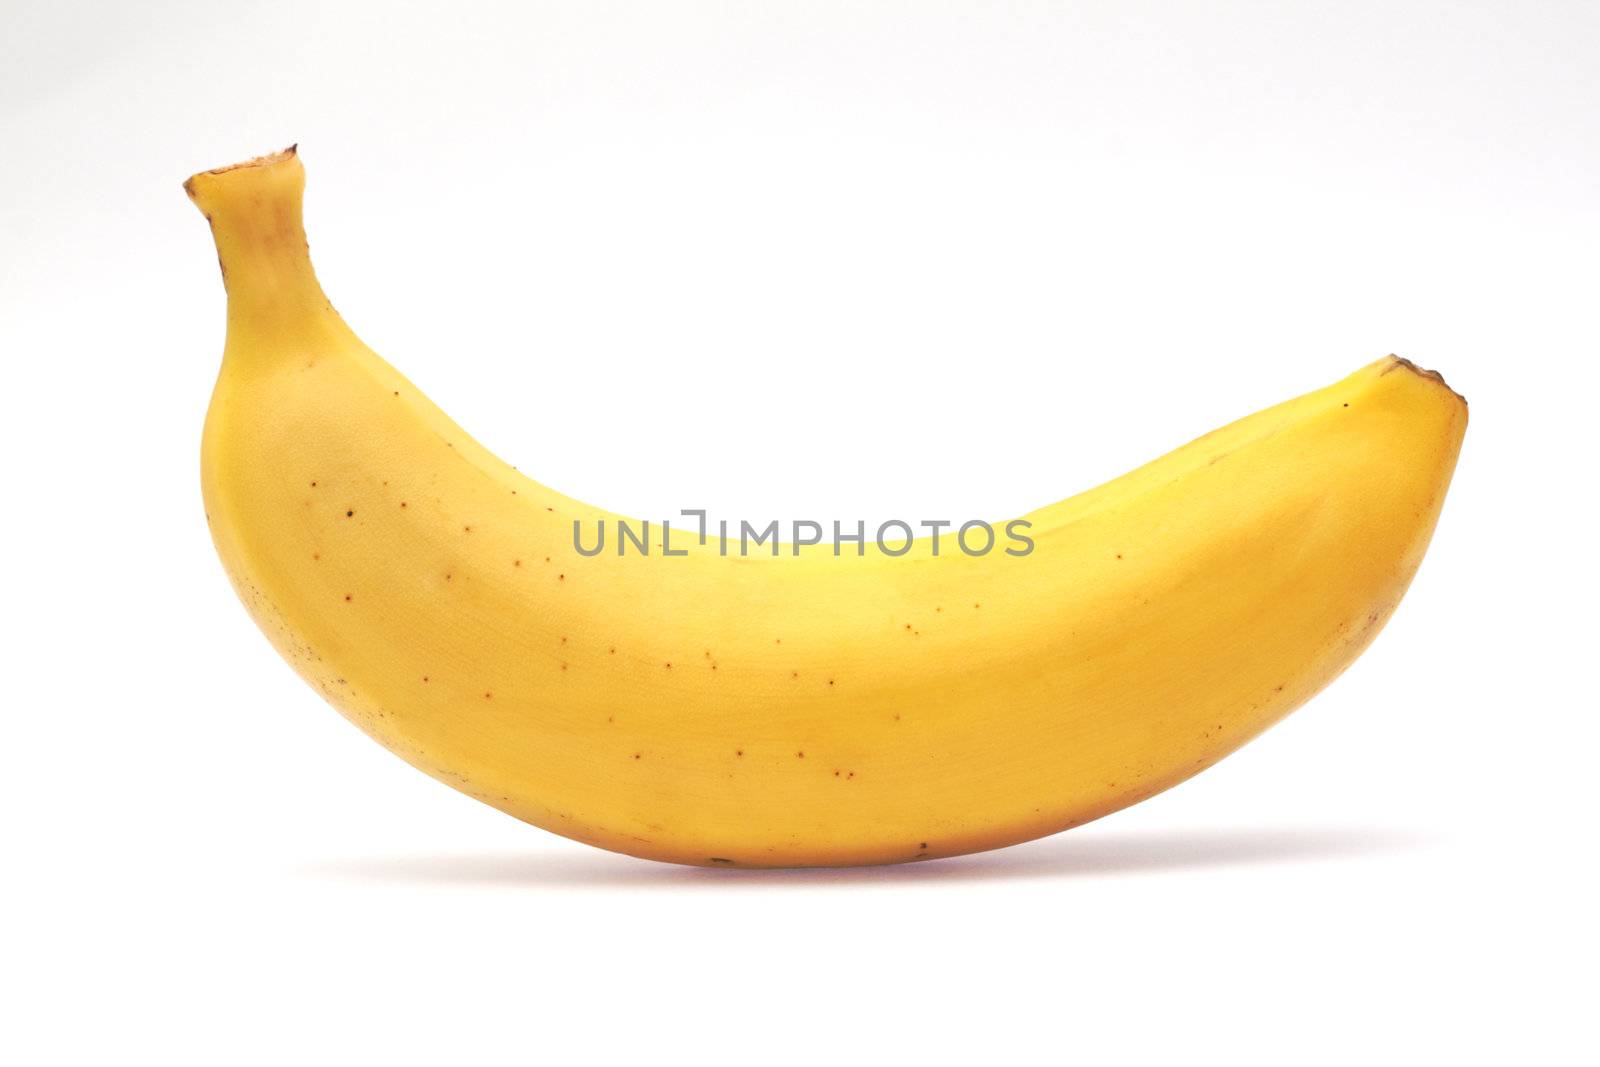 Banana isolated on white by Gdolgikh